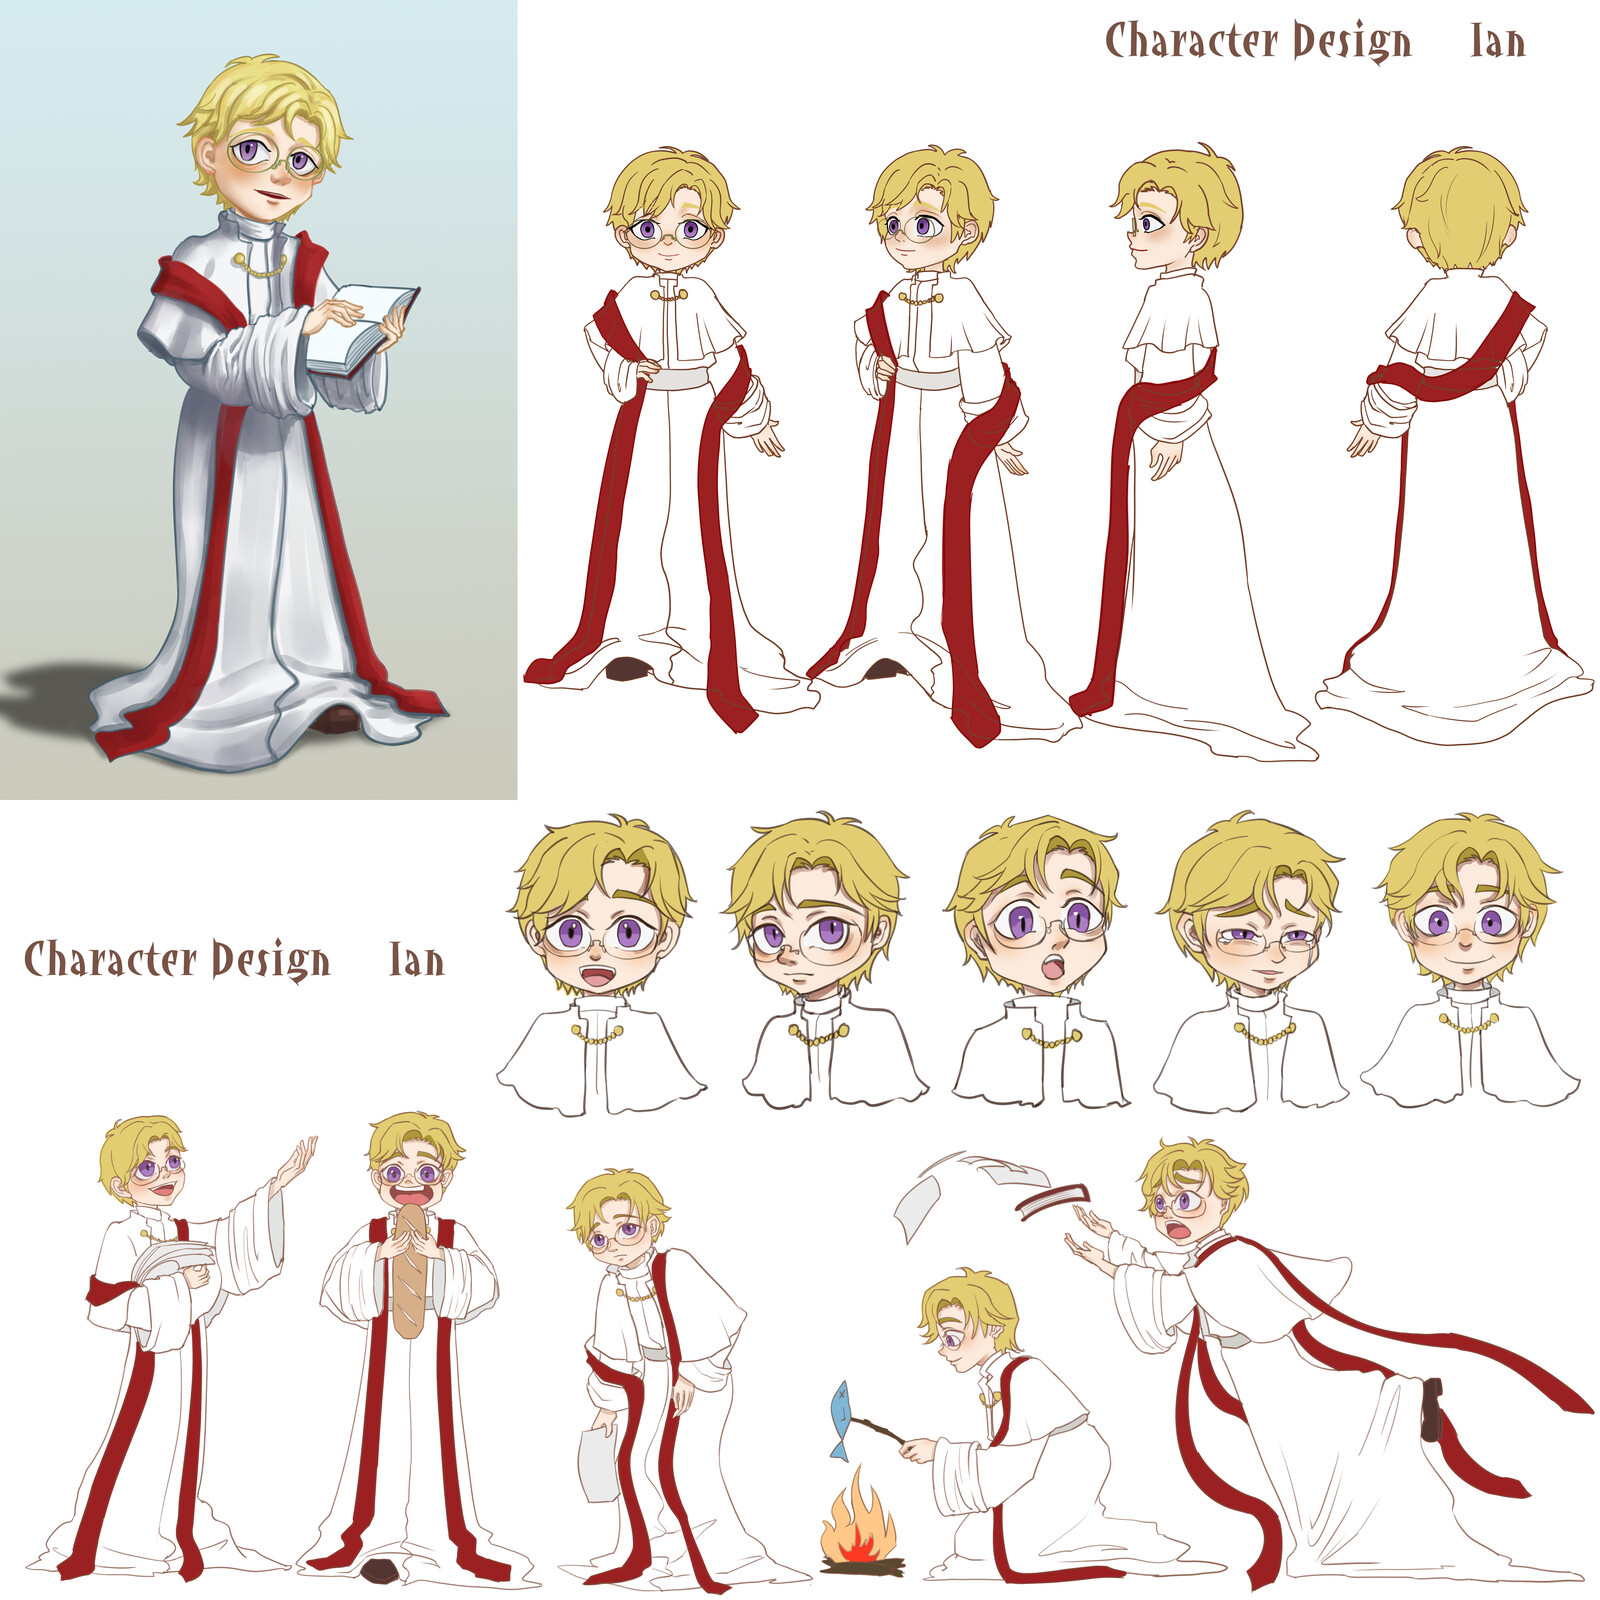 Character Design “Layla“---Ian